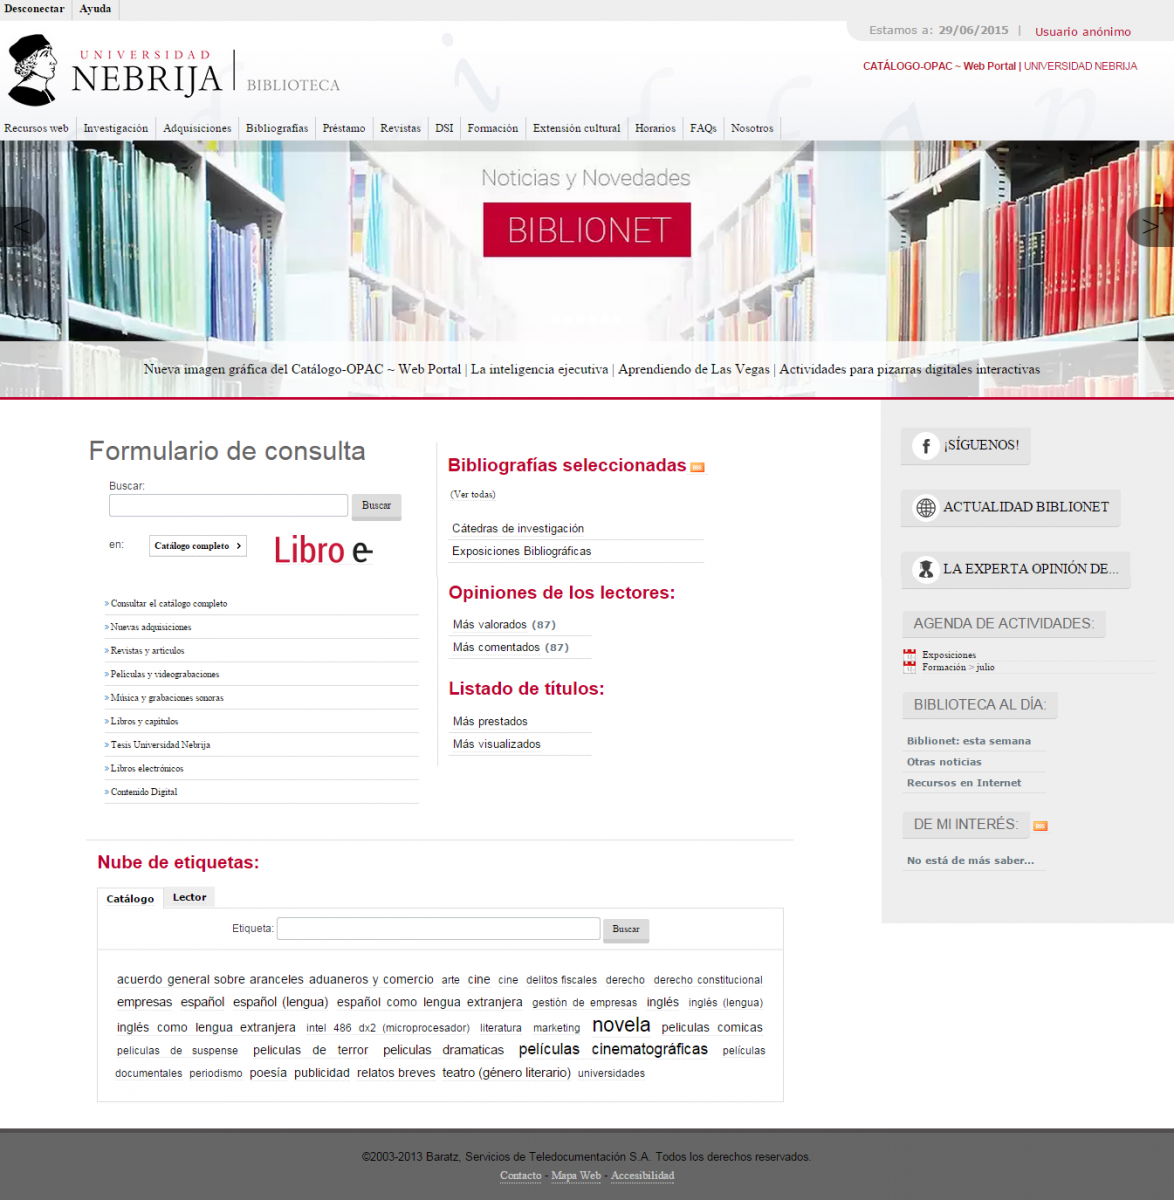 Cómo la Biblioteca de la Universidad Nebrija ha creado su portal a través del OPAC